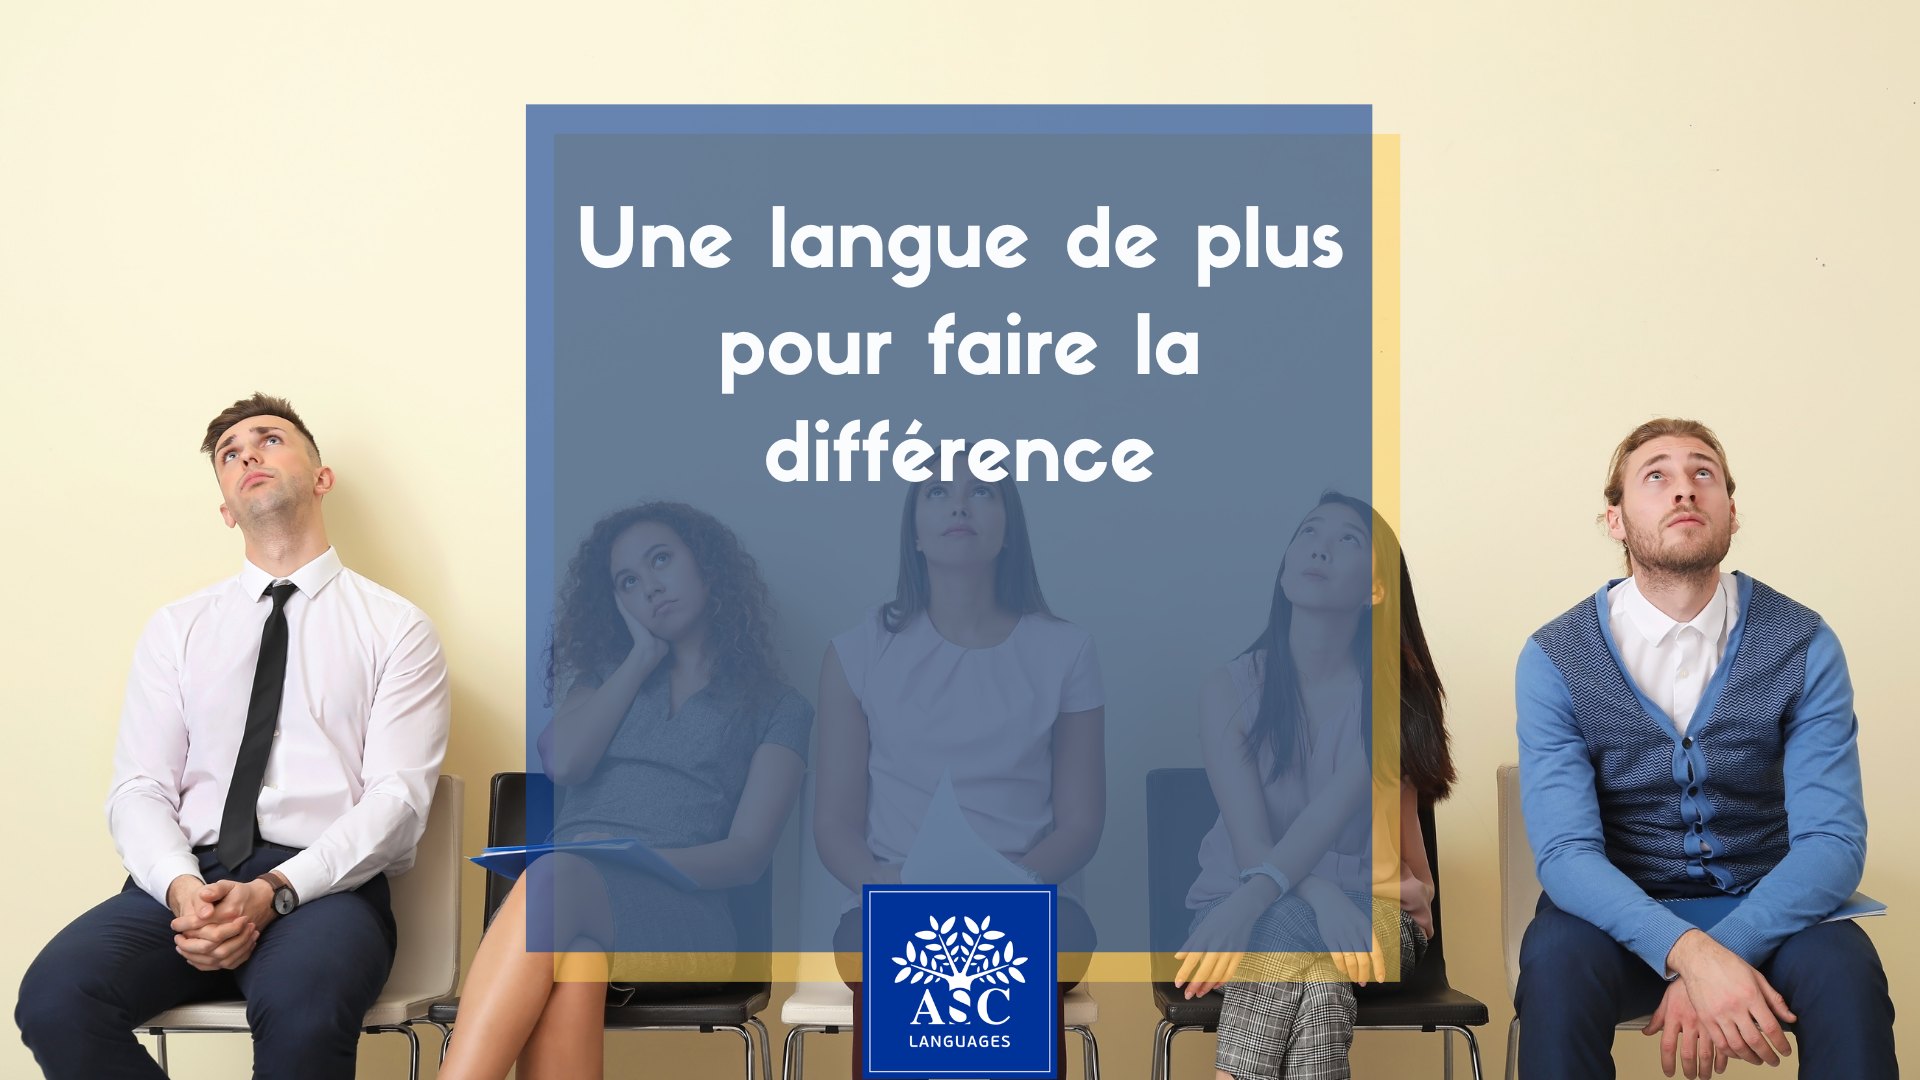 Maîtriser une langue de plus peut faire la différence - booster votre employabilité avec ASC Languages